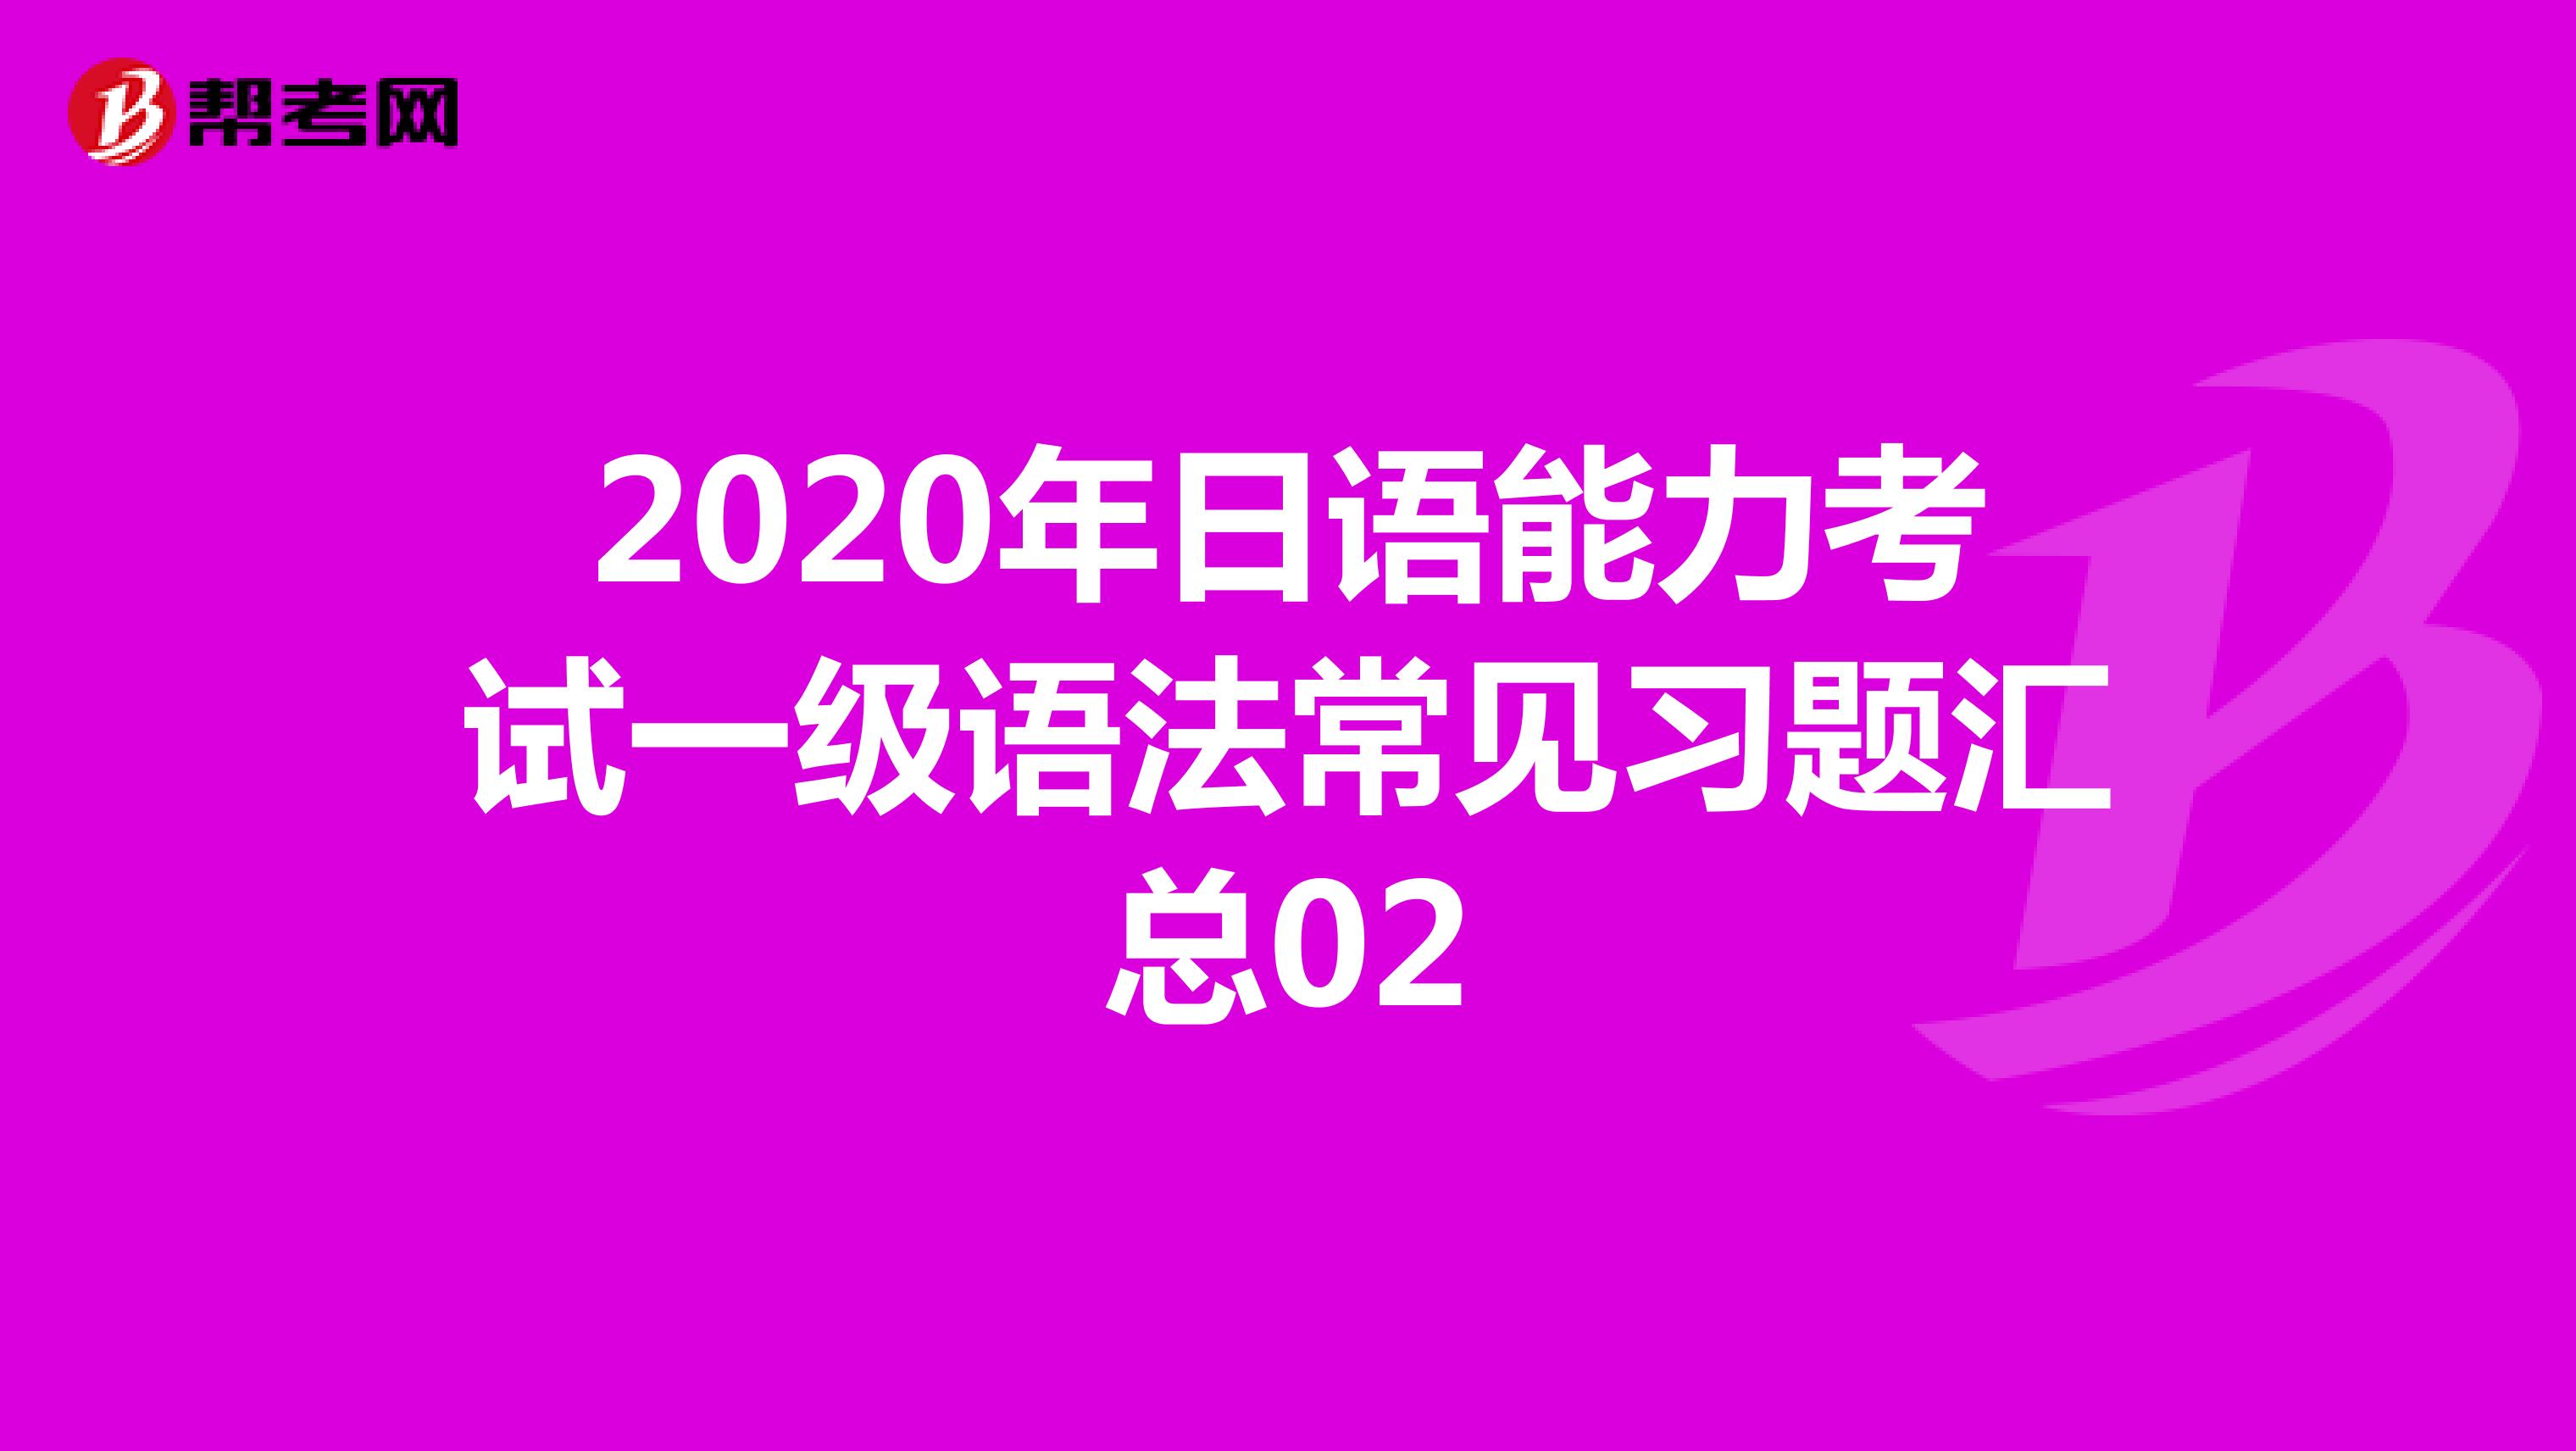 2020年日语能力考试一级语法常见习题汇总02